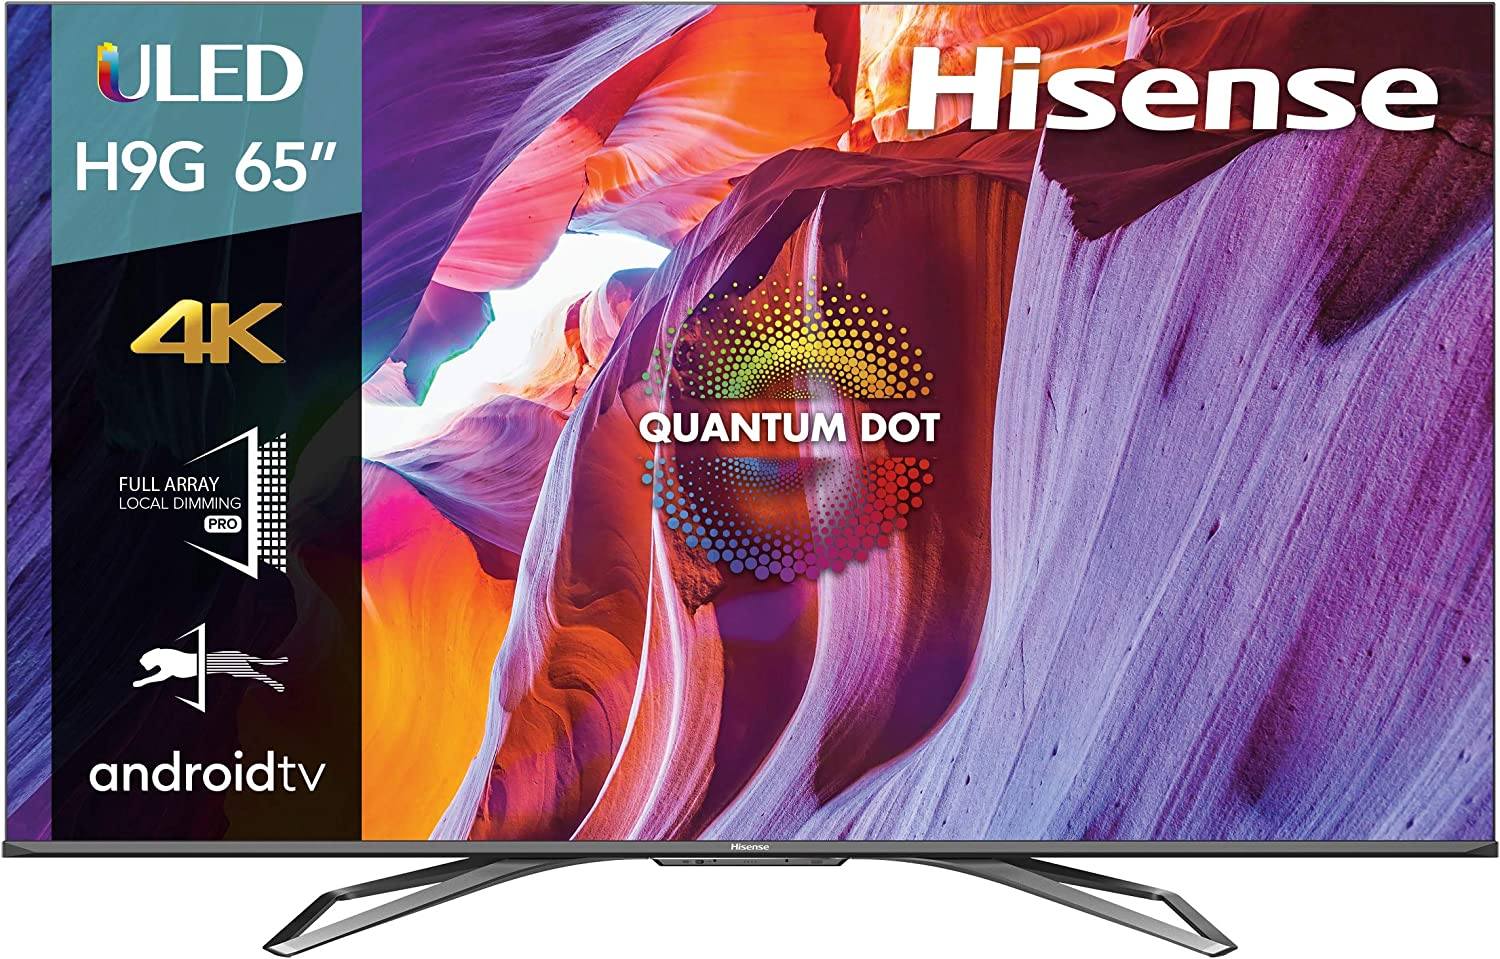 Hisense H9 Quantum android tv